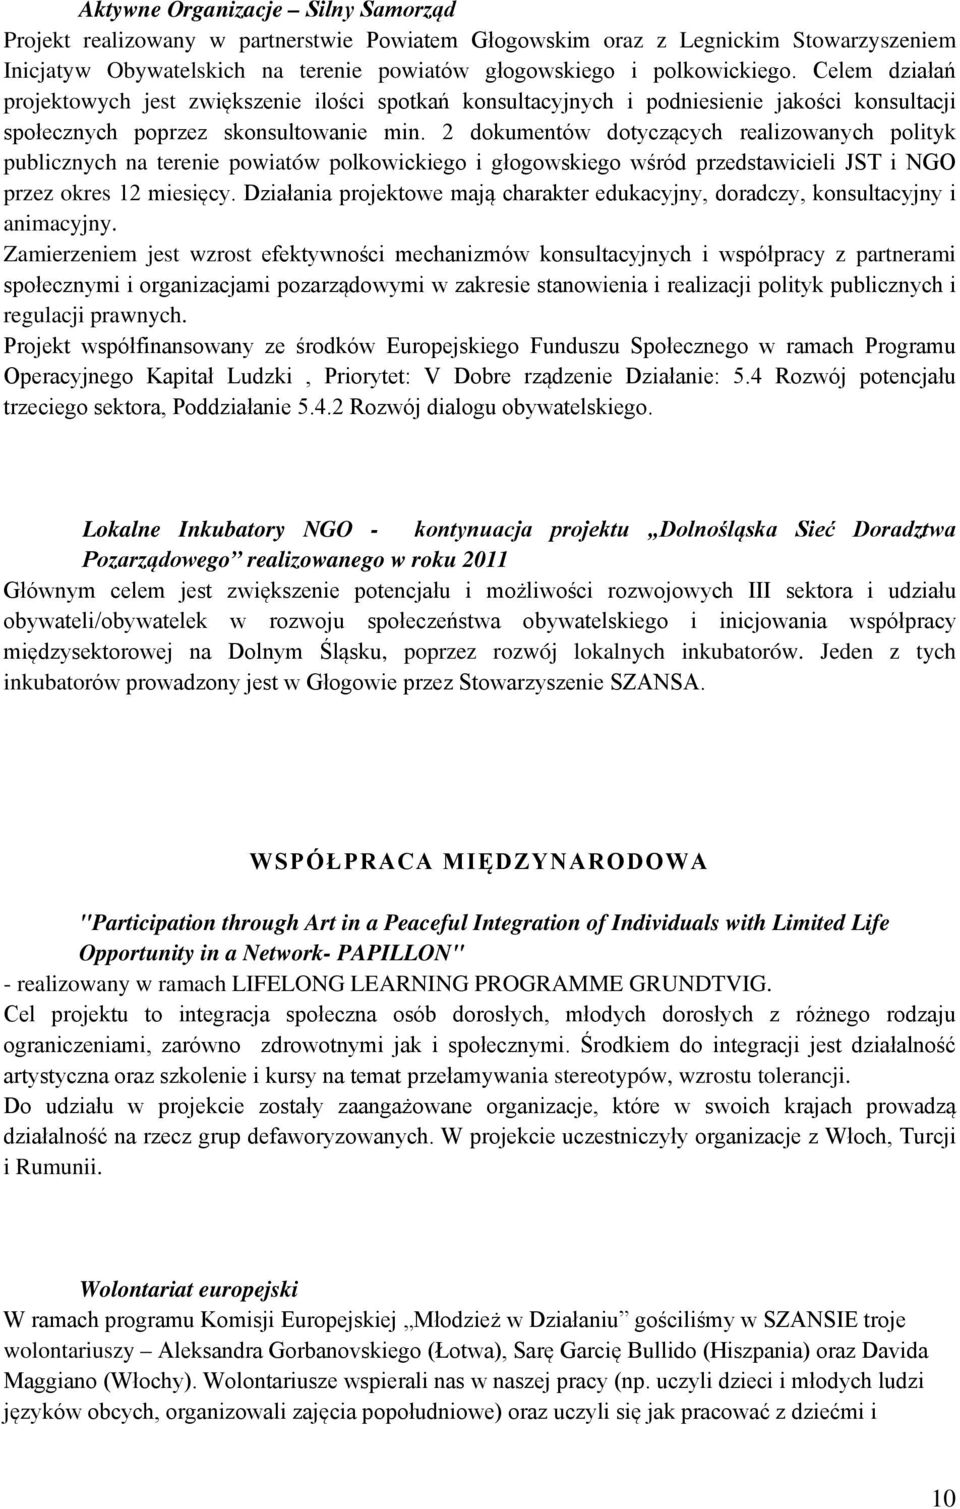 2 dokumentów dotyczących realizowanych polityk publicznych na terenie powiatów polkowickiego i głogowskiego wśród przedstawicieli JST i NGO przez okres 12 miesięcy.